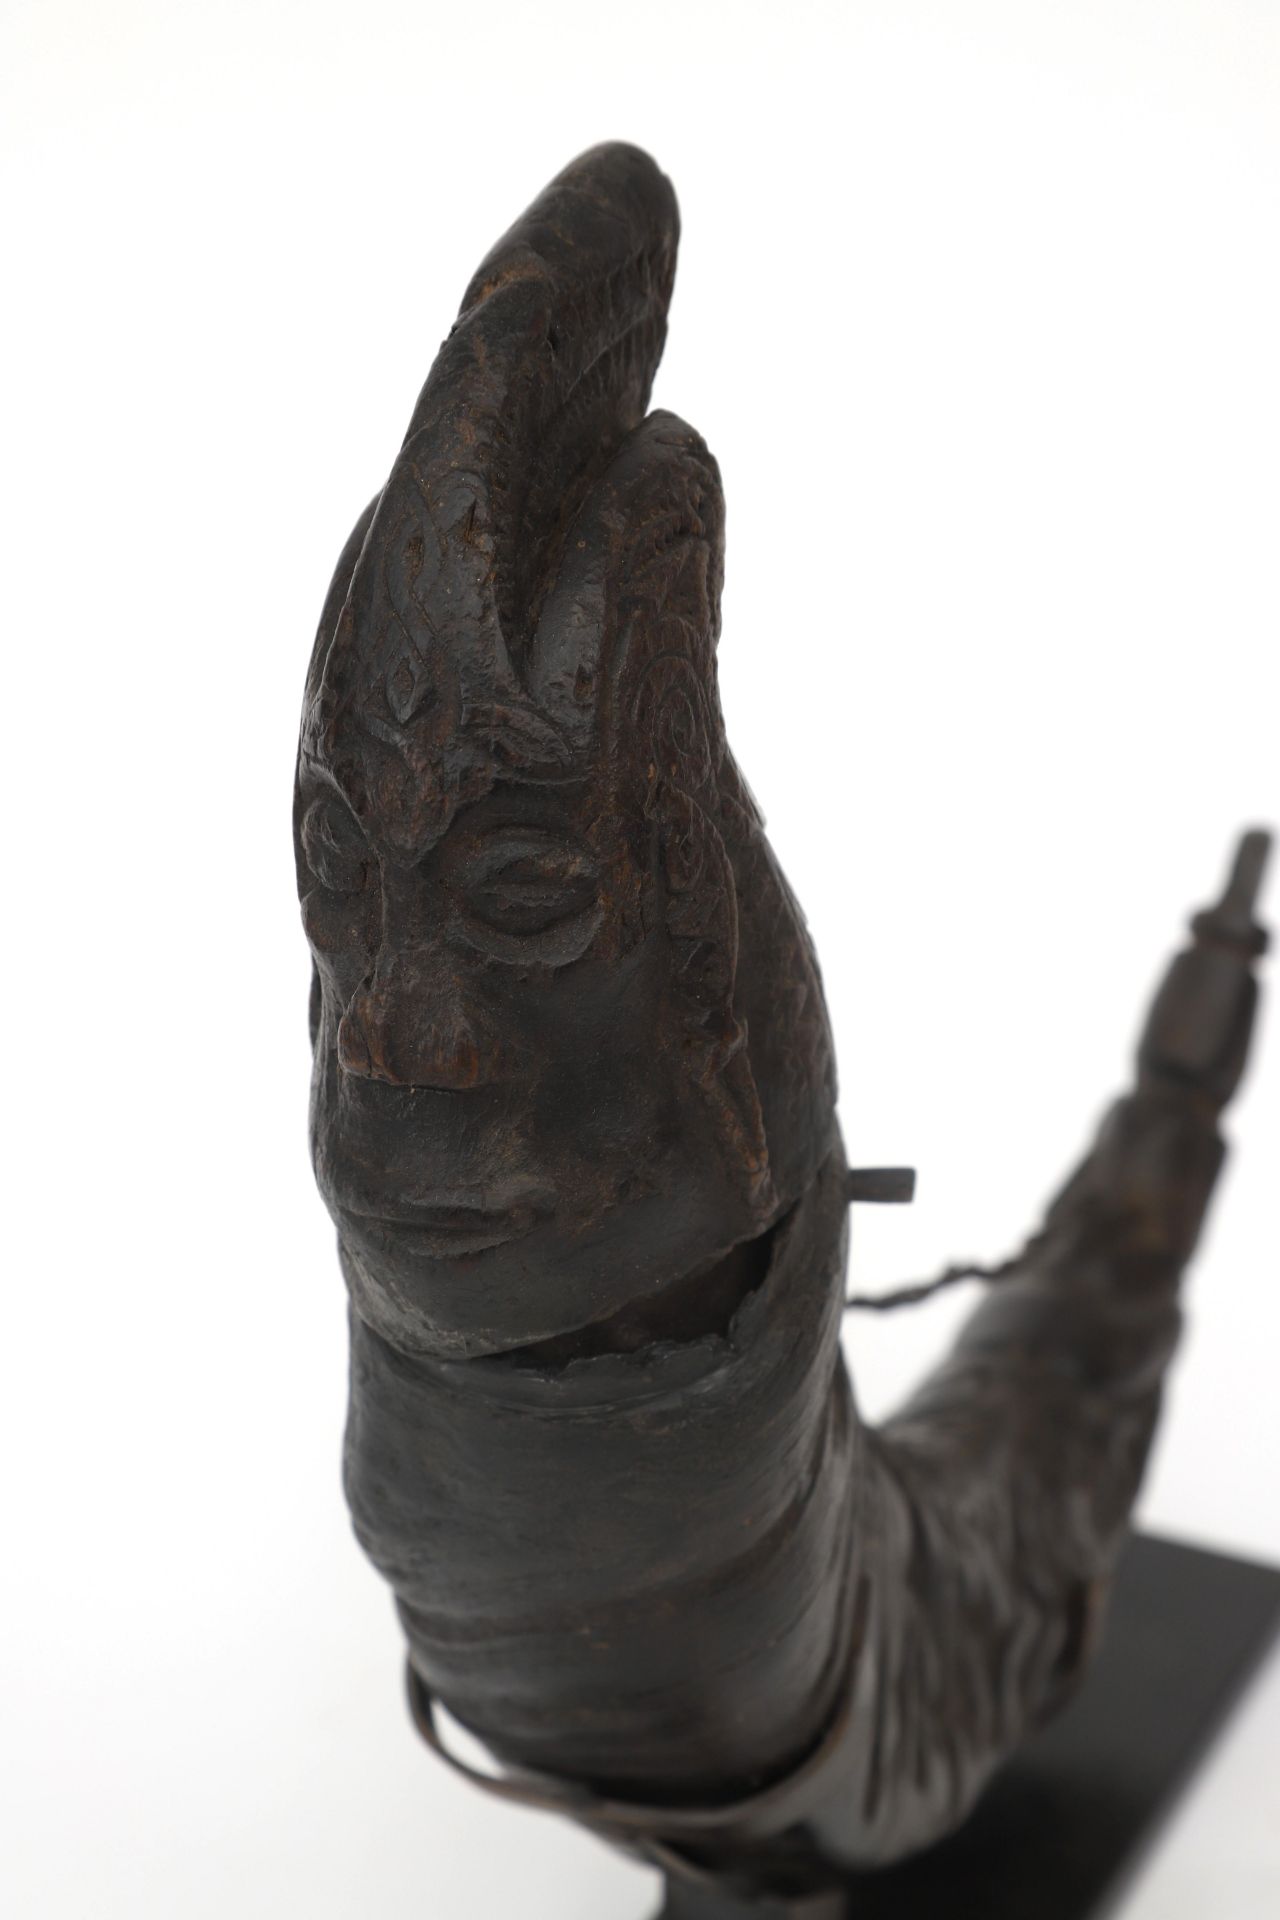 A rare Batak medicine horn (Puk Puk horn), Sahan Naga Morsarang, Sumatra, Indonesia, ca. 1900. - Bild 2 aus 4